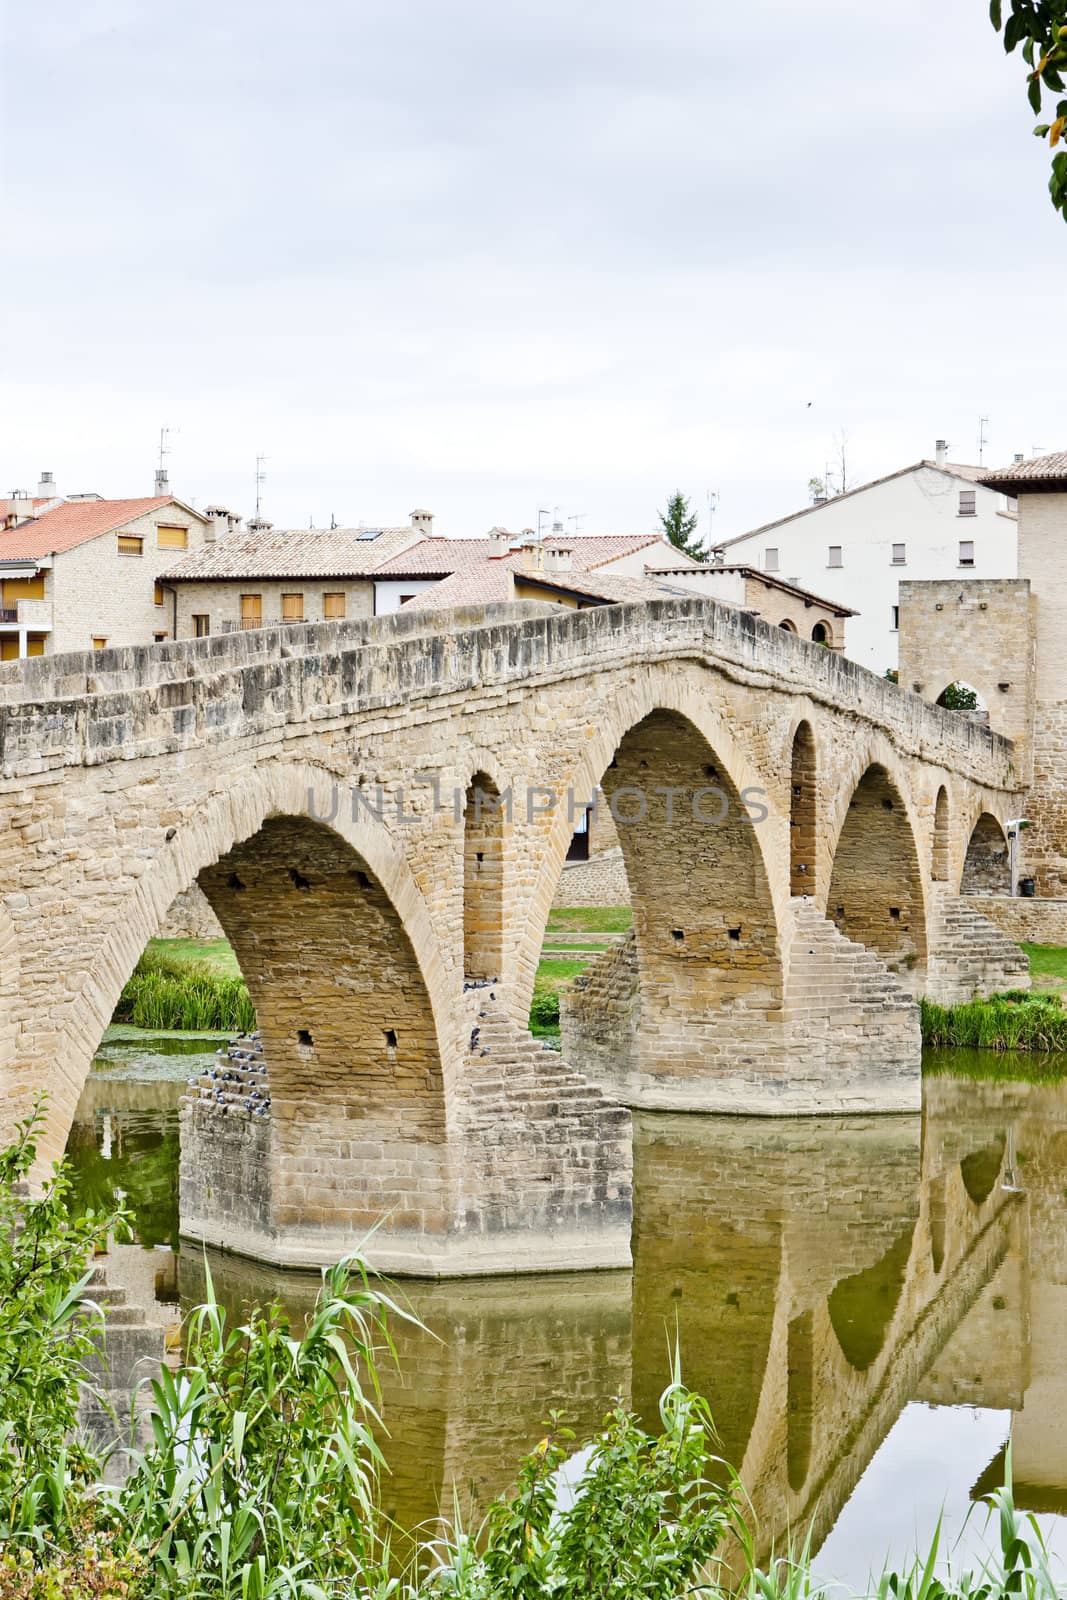 romanesque bridge over river Arga, Puente La Reina, Road to Sant by phbcz